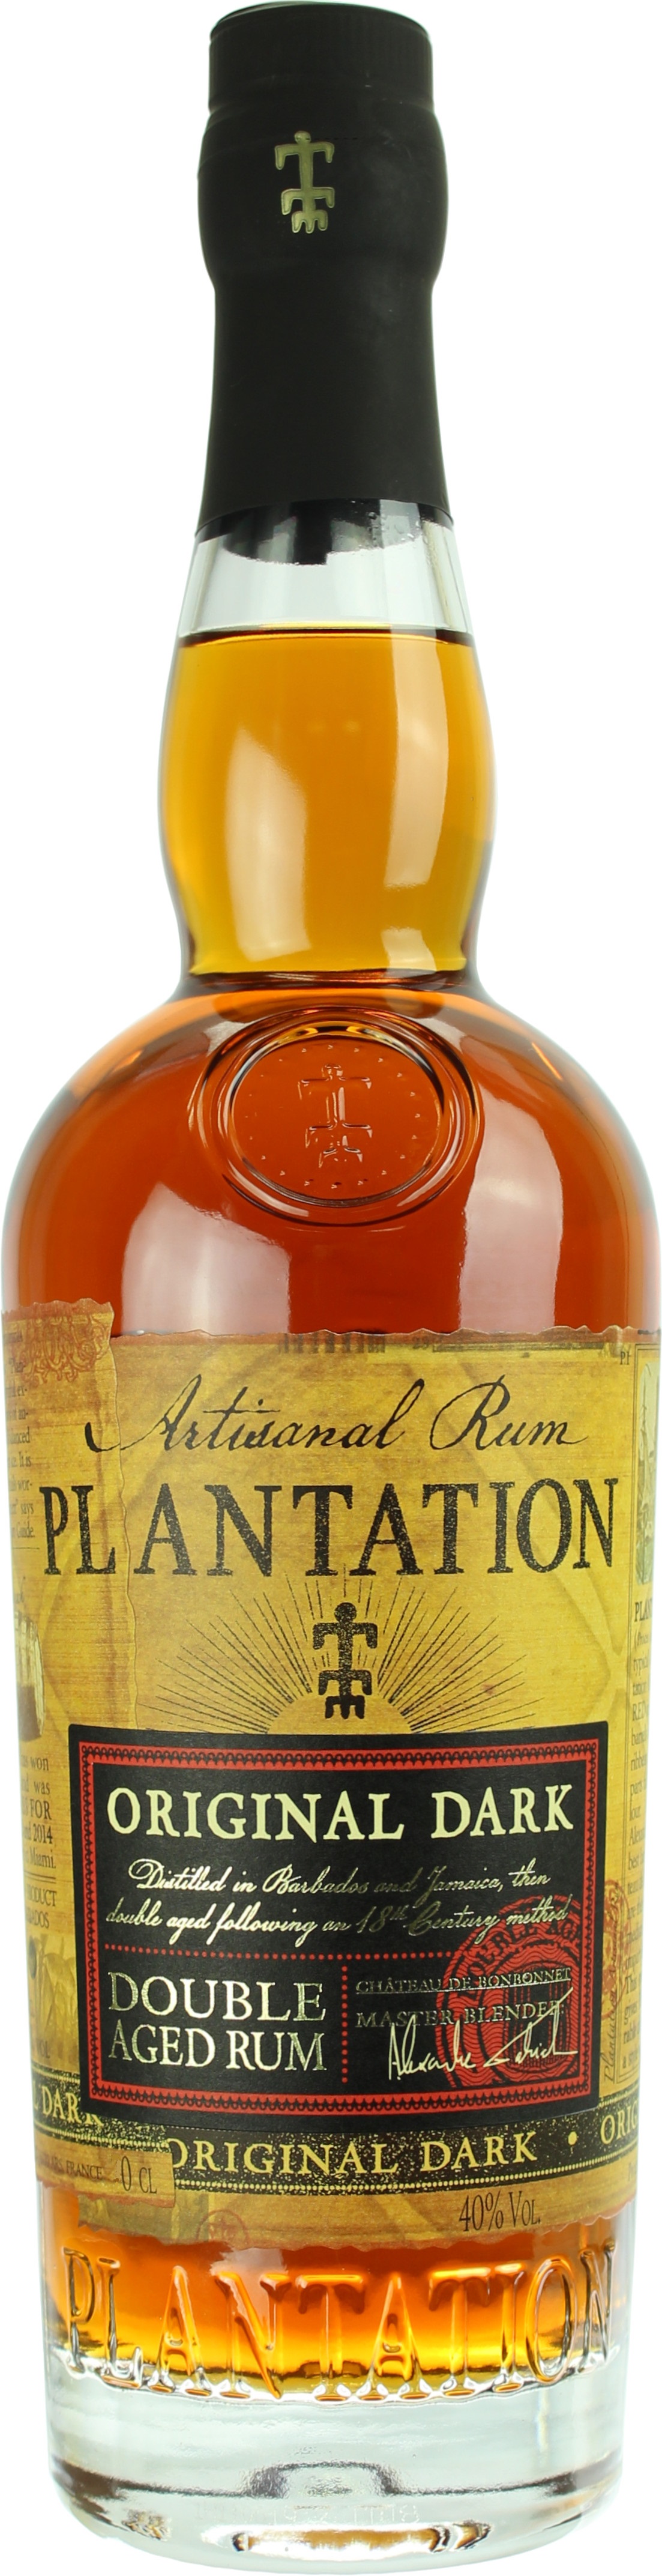 Plantation Original Dark Rum 40.0% 1 Liter